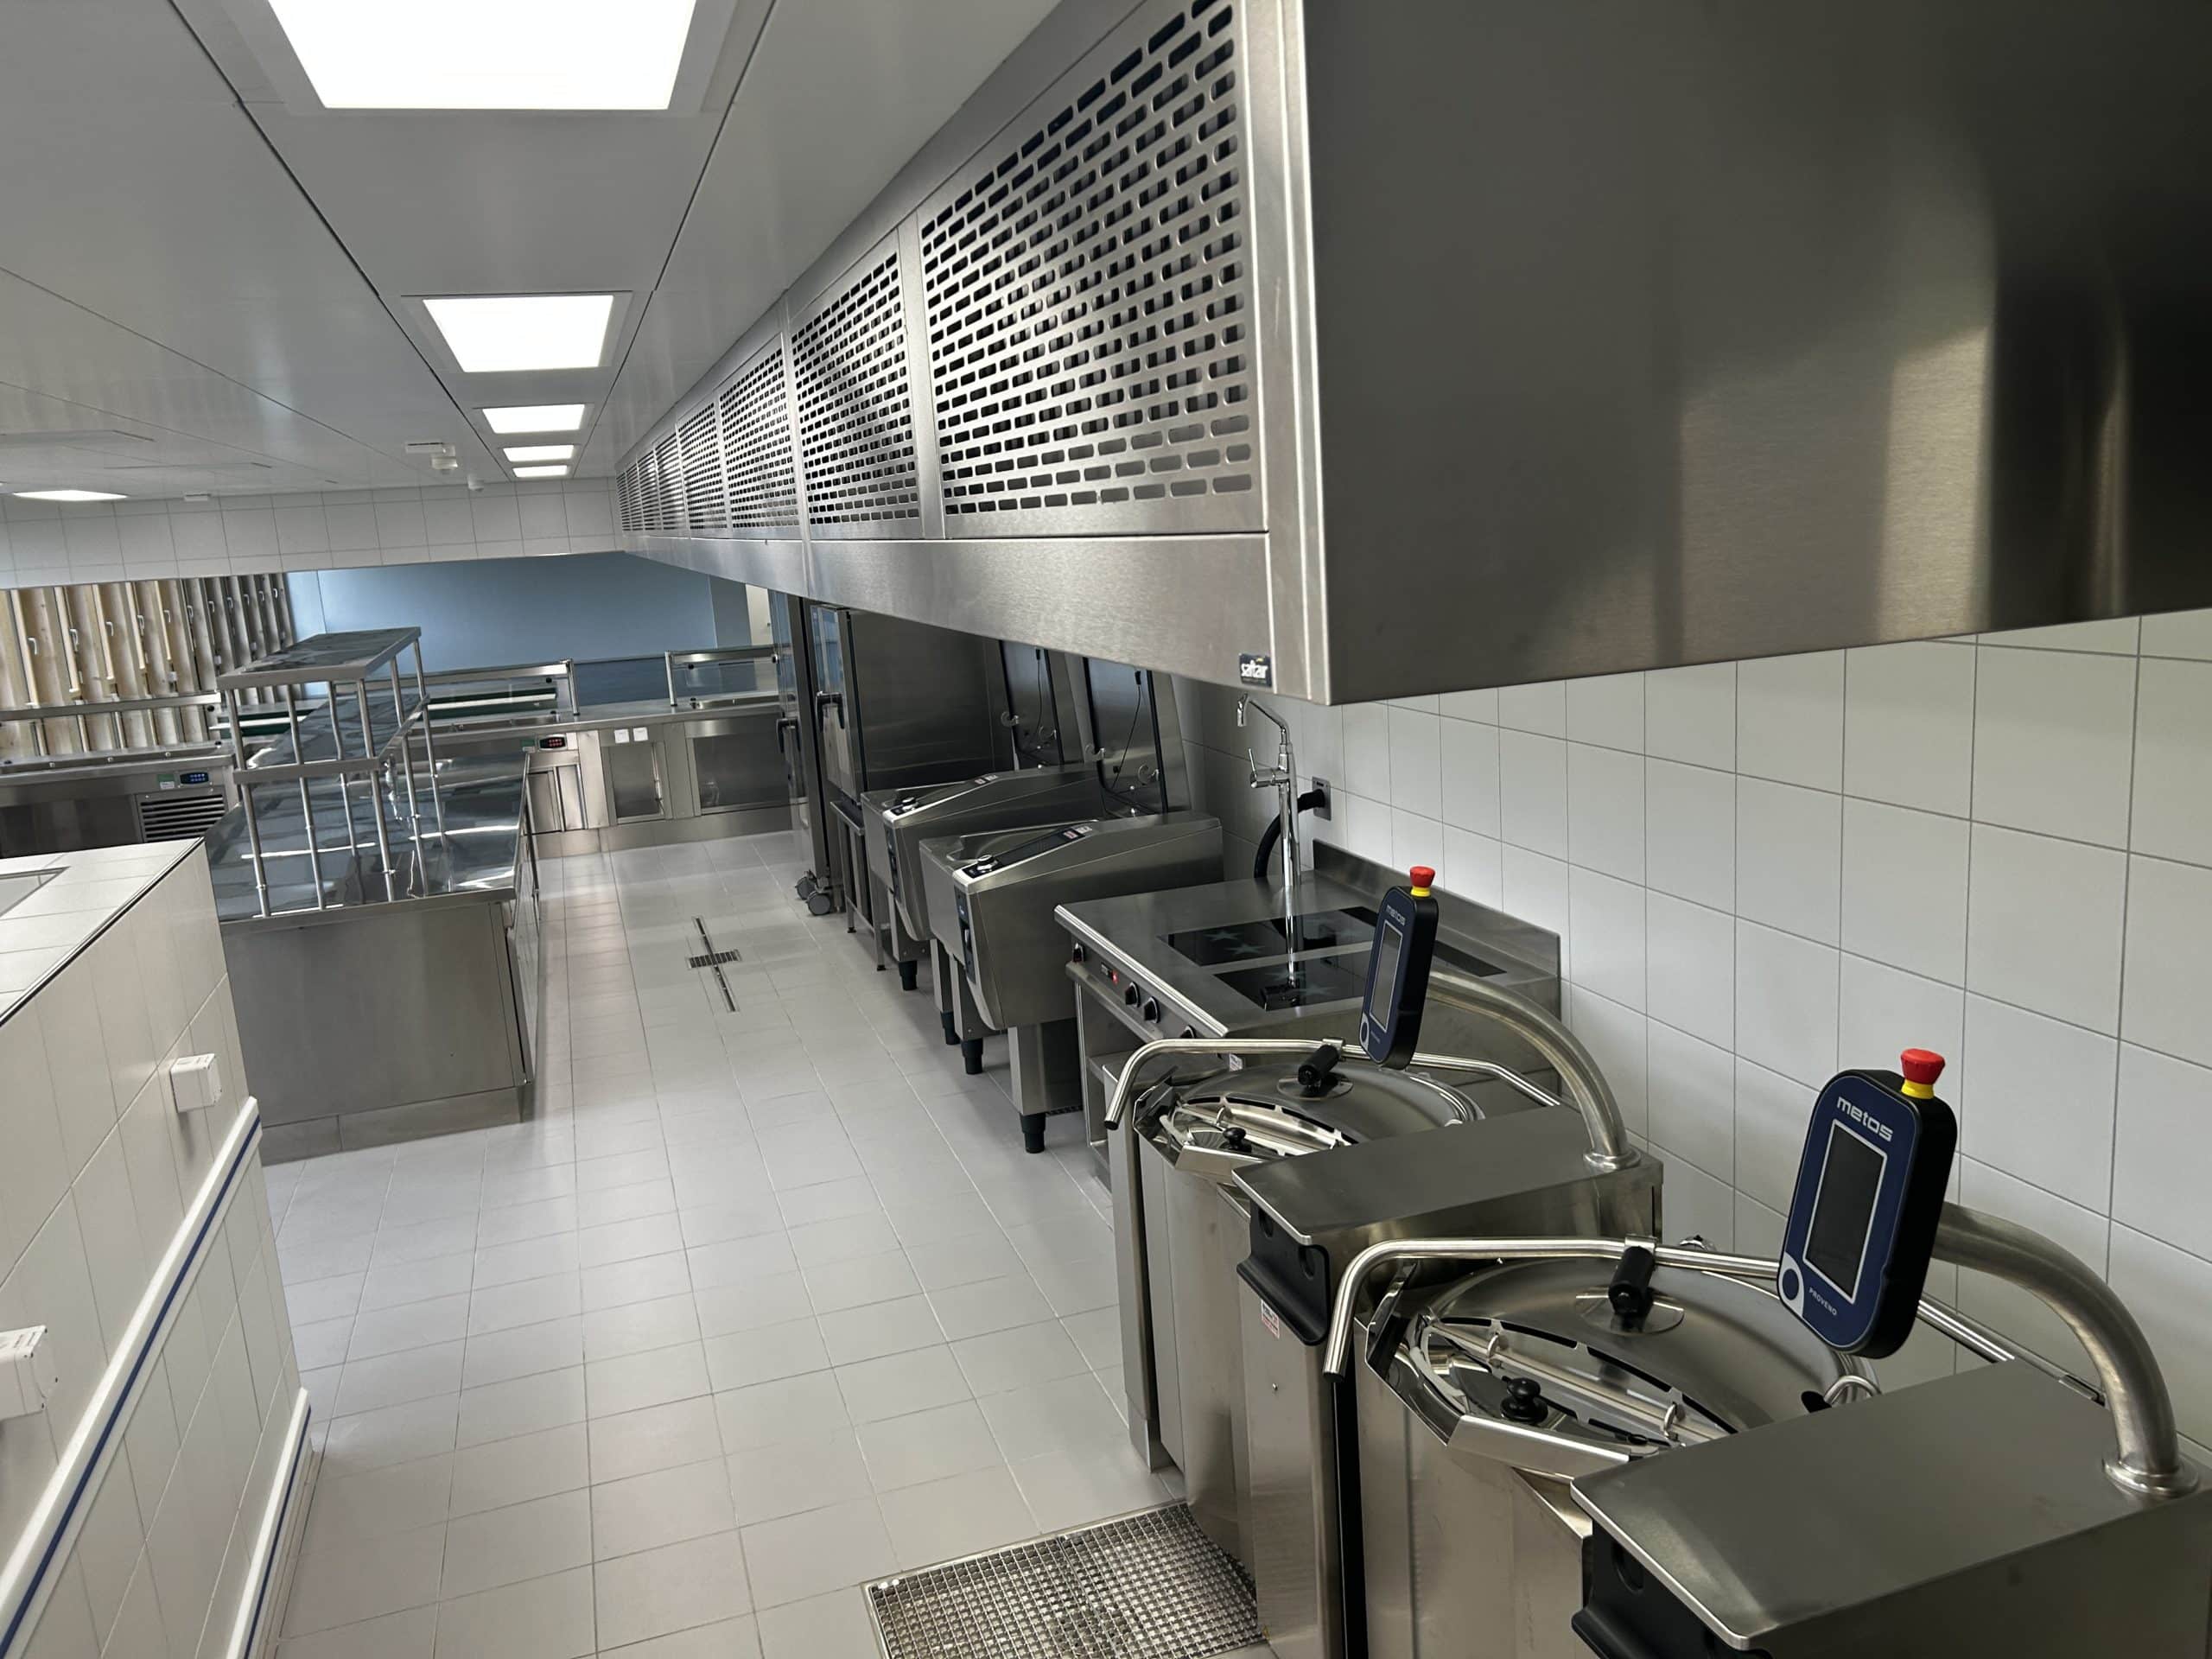 Cuisines Professionnelles suisse Genève Vaud matériel professionnel équipement pro ustensile dépannage restaurant hôtellerie